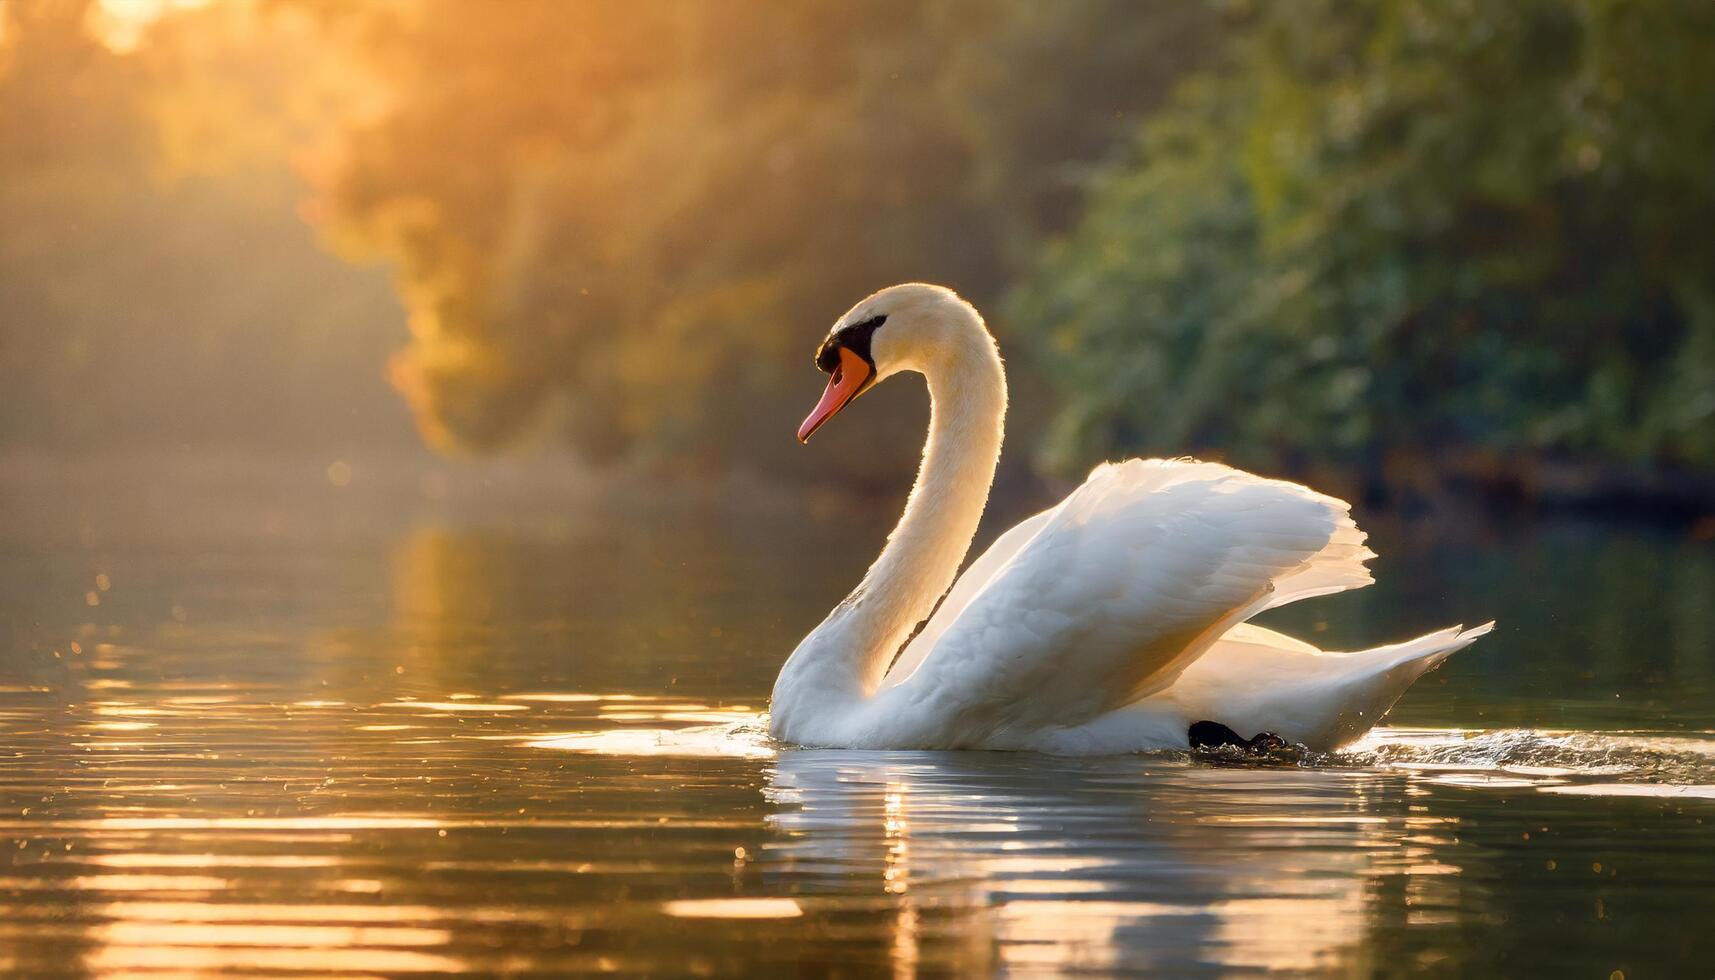 encantador cisne en agua en dorado hora y amplio espacio para texto foto